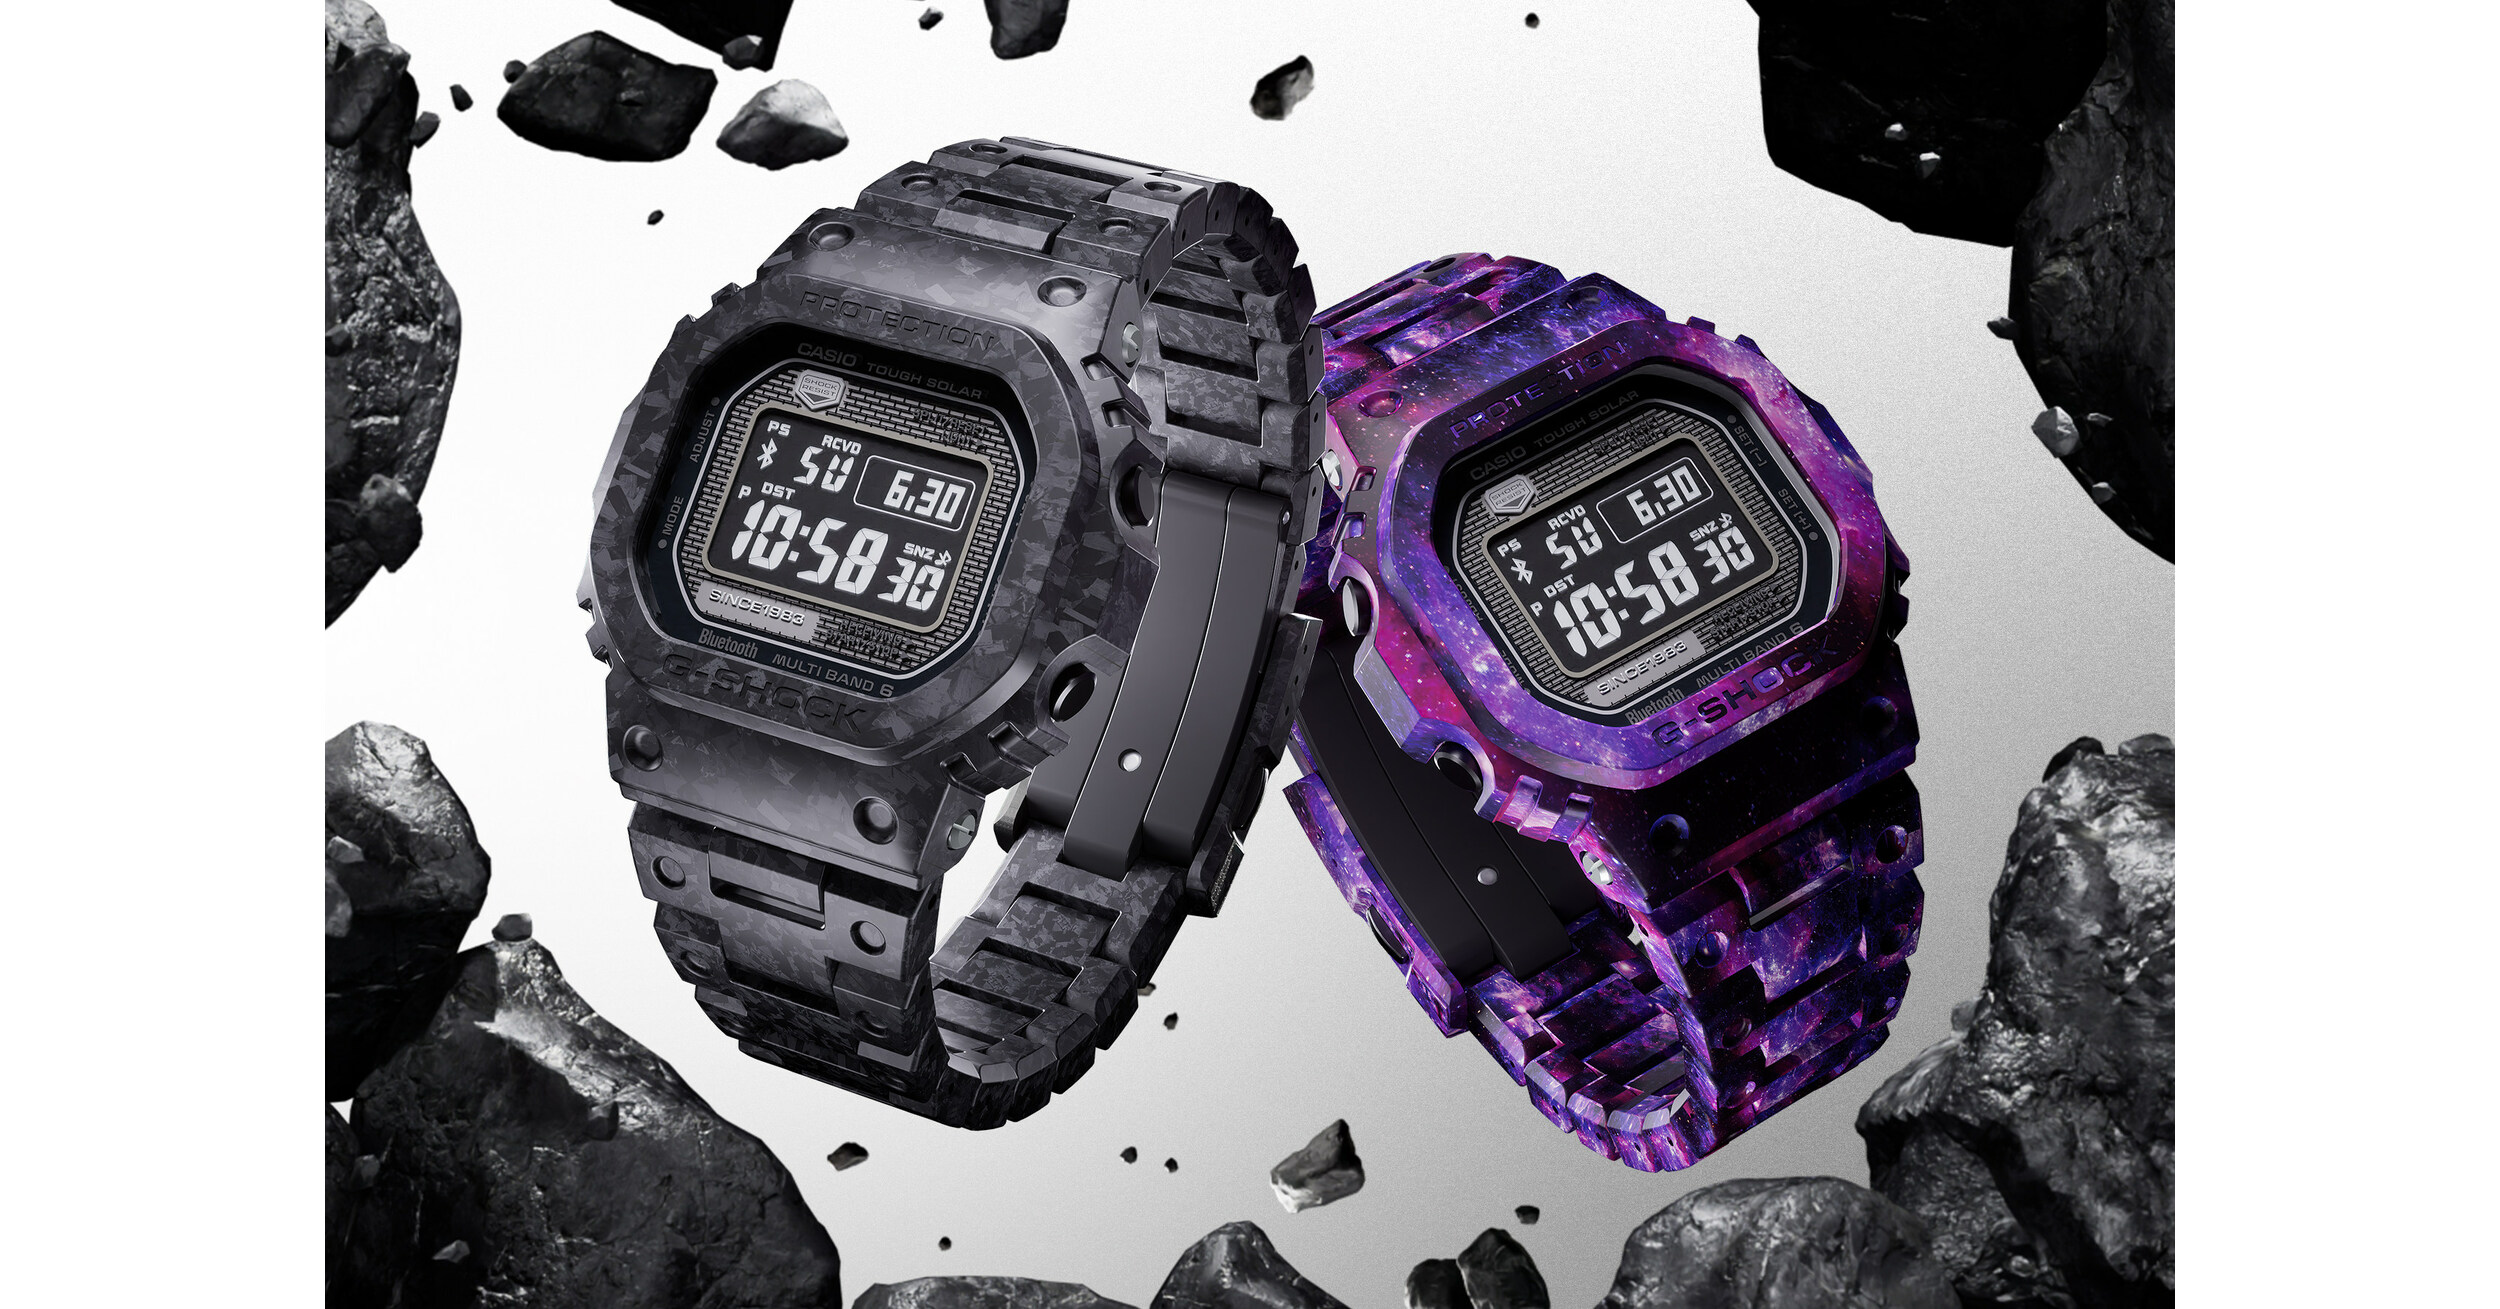 Casio wprowadza na rynek zegarki G-SHOCK wykonane z różnych rodzajów materiałów węglowych